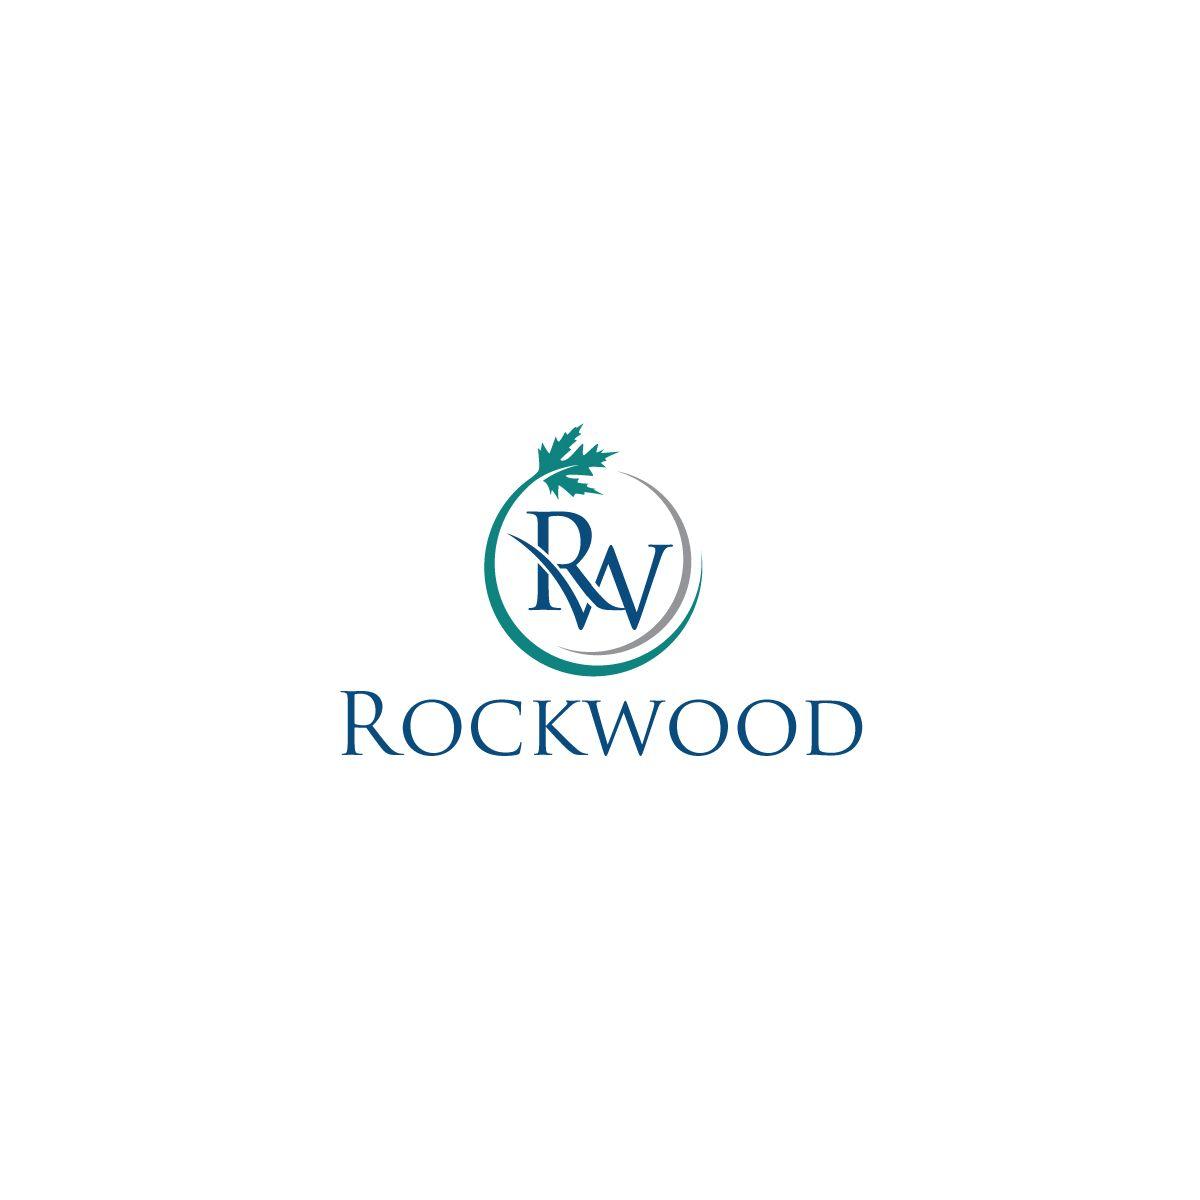 Rockwood Logo - Elegant, Playful, Consumer Logo Design for Rockwood